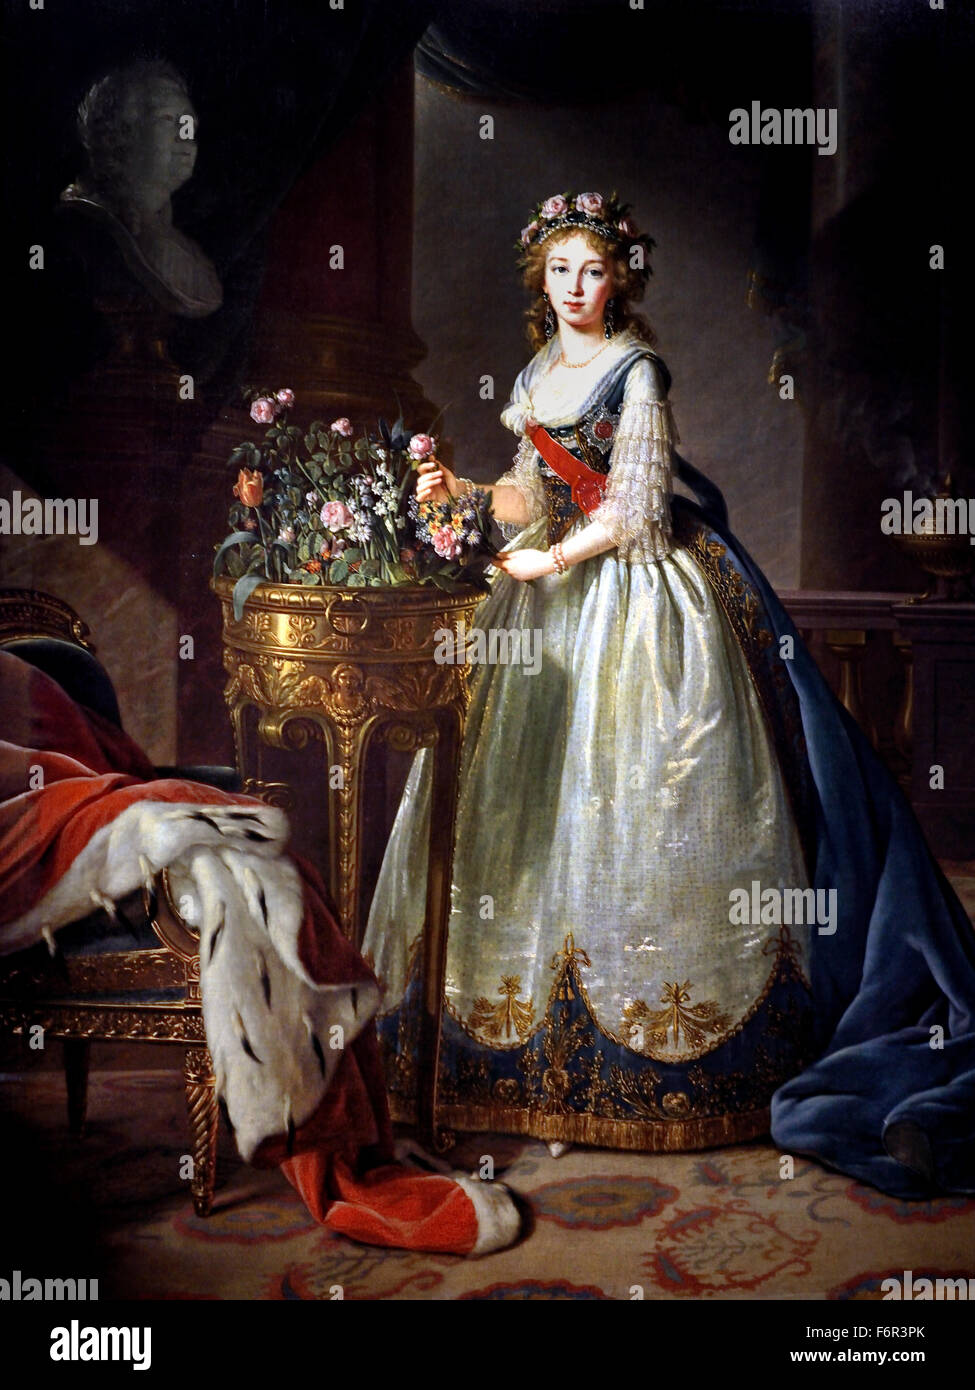 Elizaveta Alexeevna mit Rosen 1795, Hermitage Russland) Marie Élisabeth Louise Vigée Le Brun 1755 –1842 Paris Französisch Frankreich (Rokoko klassizistischen Maler) Stockfoto